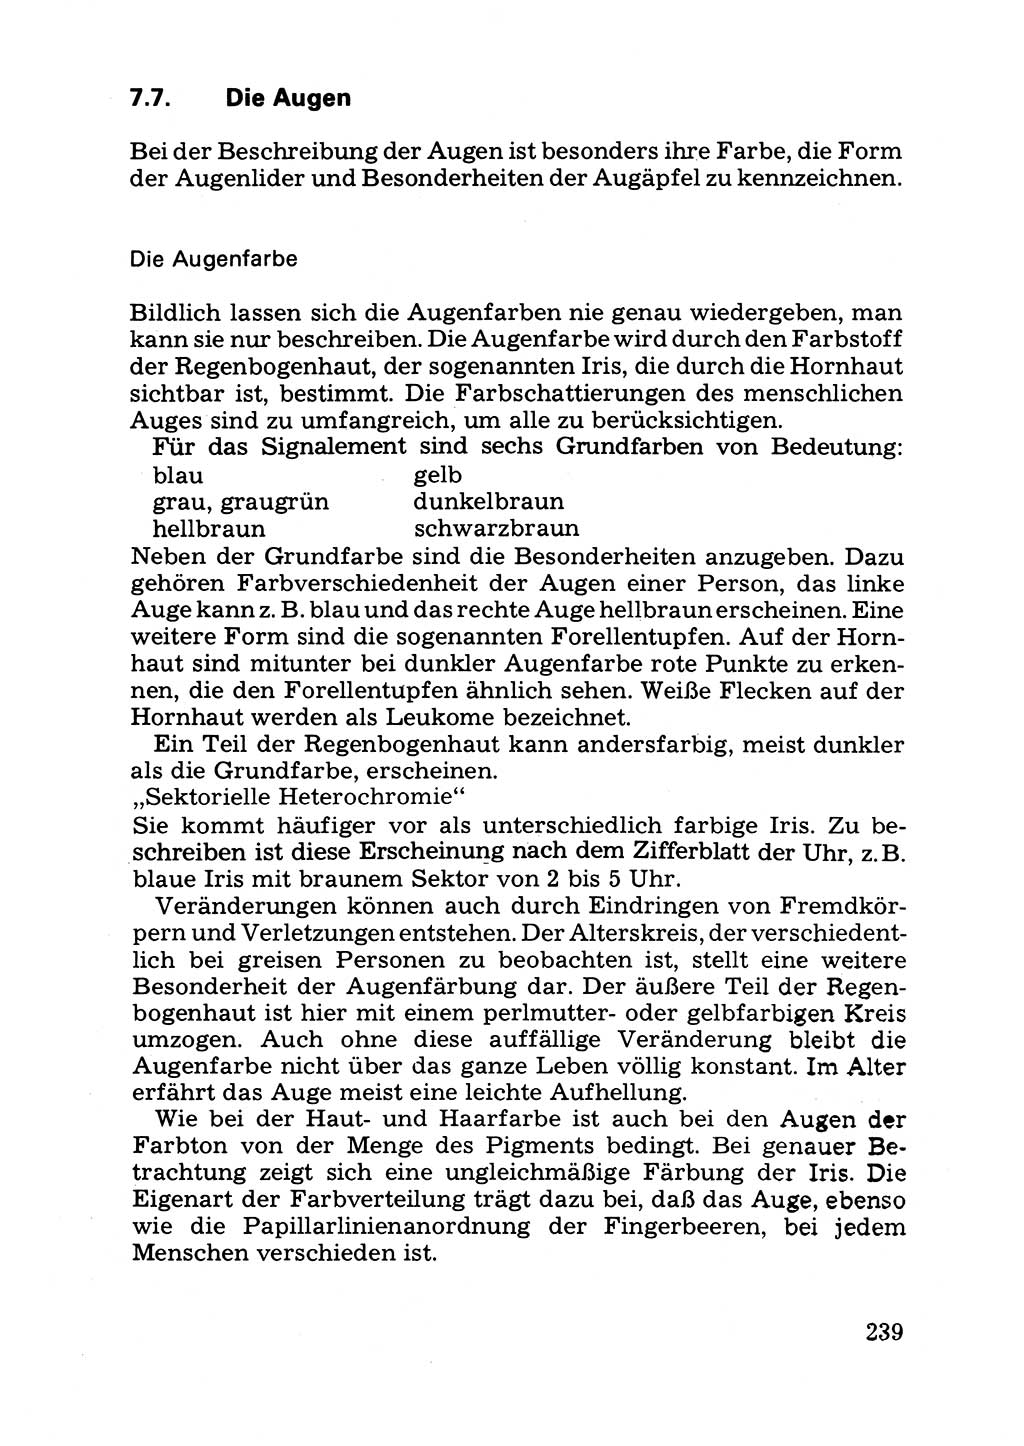 Das subjektive Porträt [Deutsche Demokratische Republik (DDR)] 1981, Seite 239 (Subj. Port. DDR 1981, S. 239)